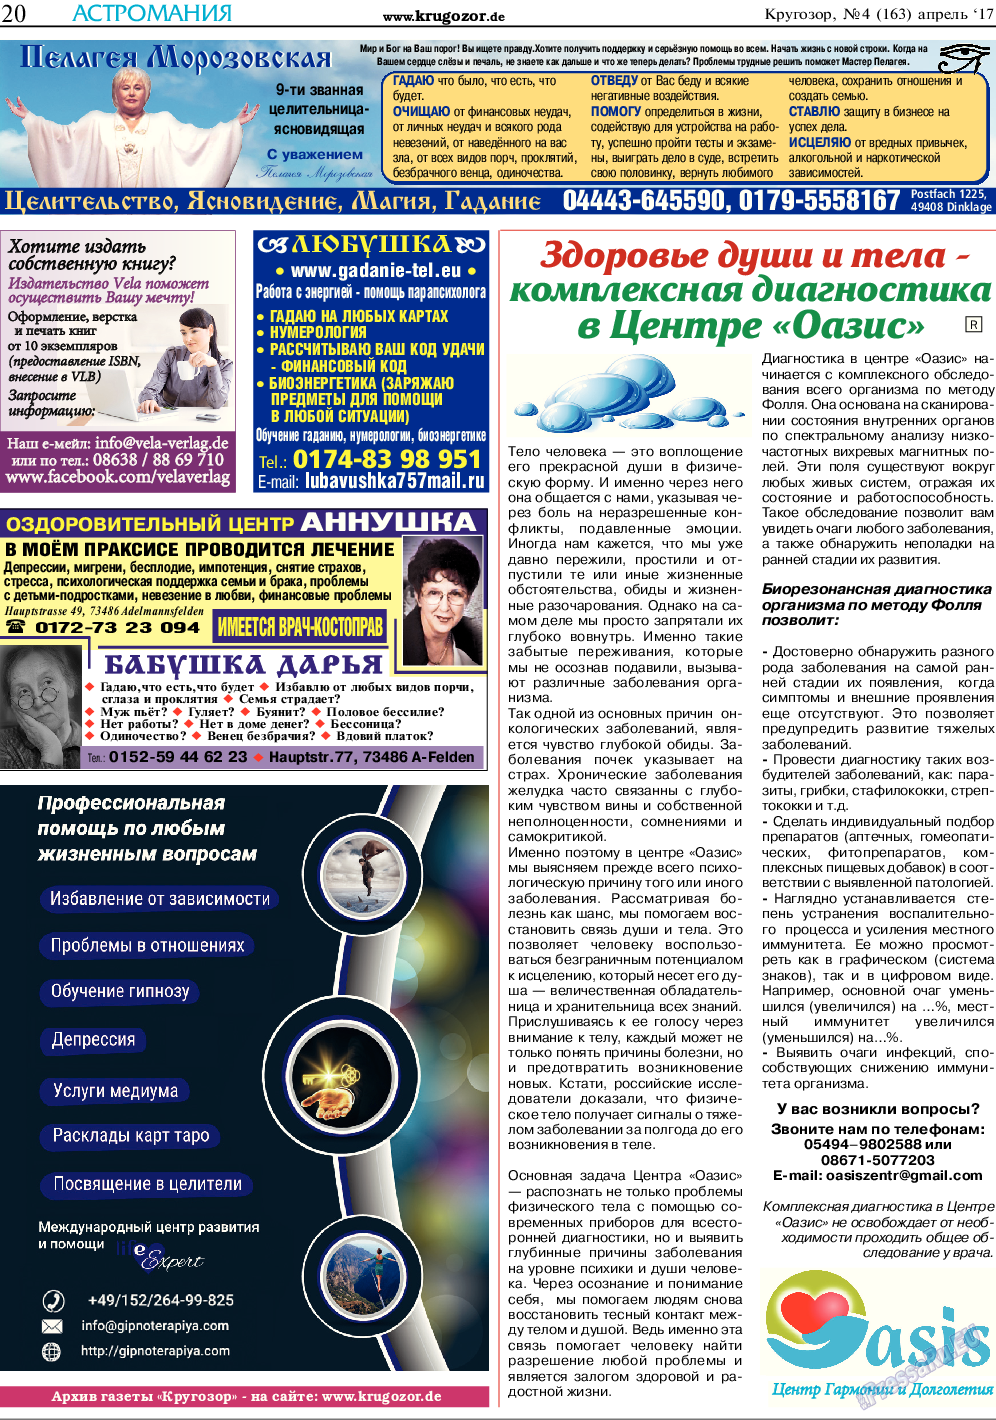 Кругозор, газета. 2017 №4 стр.20